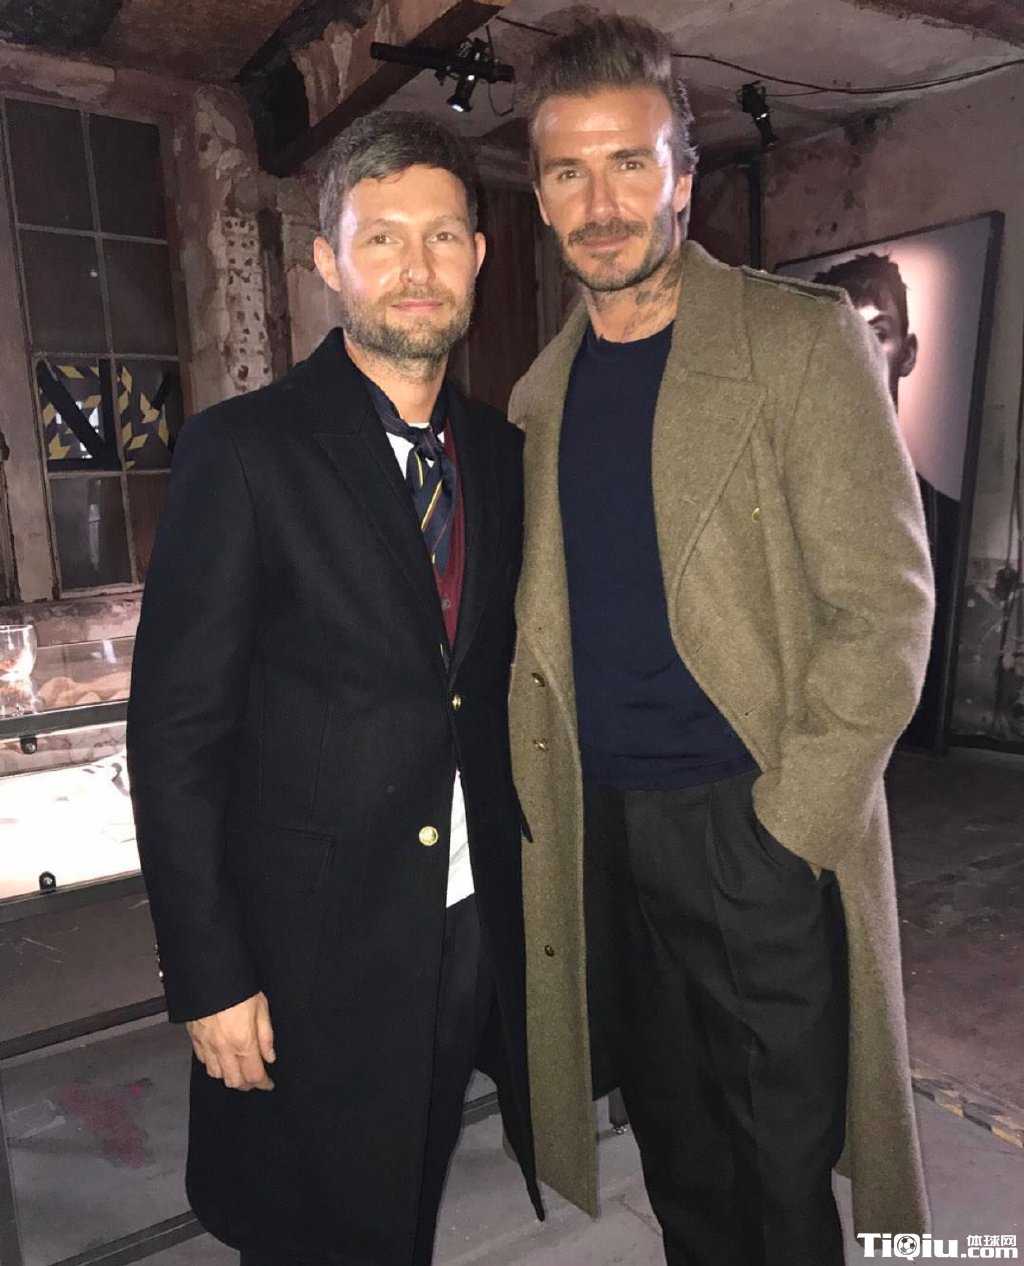 与 H&M 品牌合作升级 大卫·贝克汉姆 David Beckham 完美诠释现代时尚美学理念 – VC News